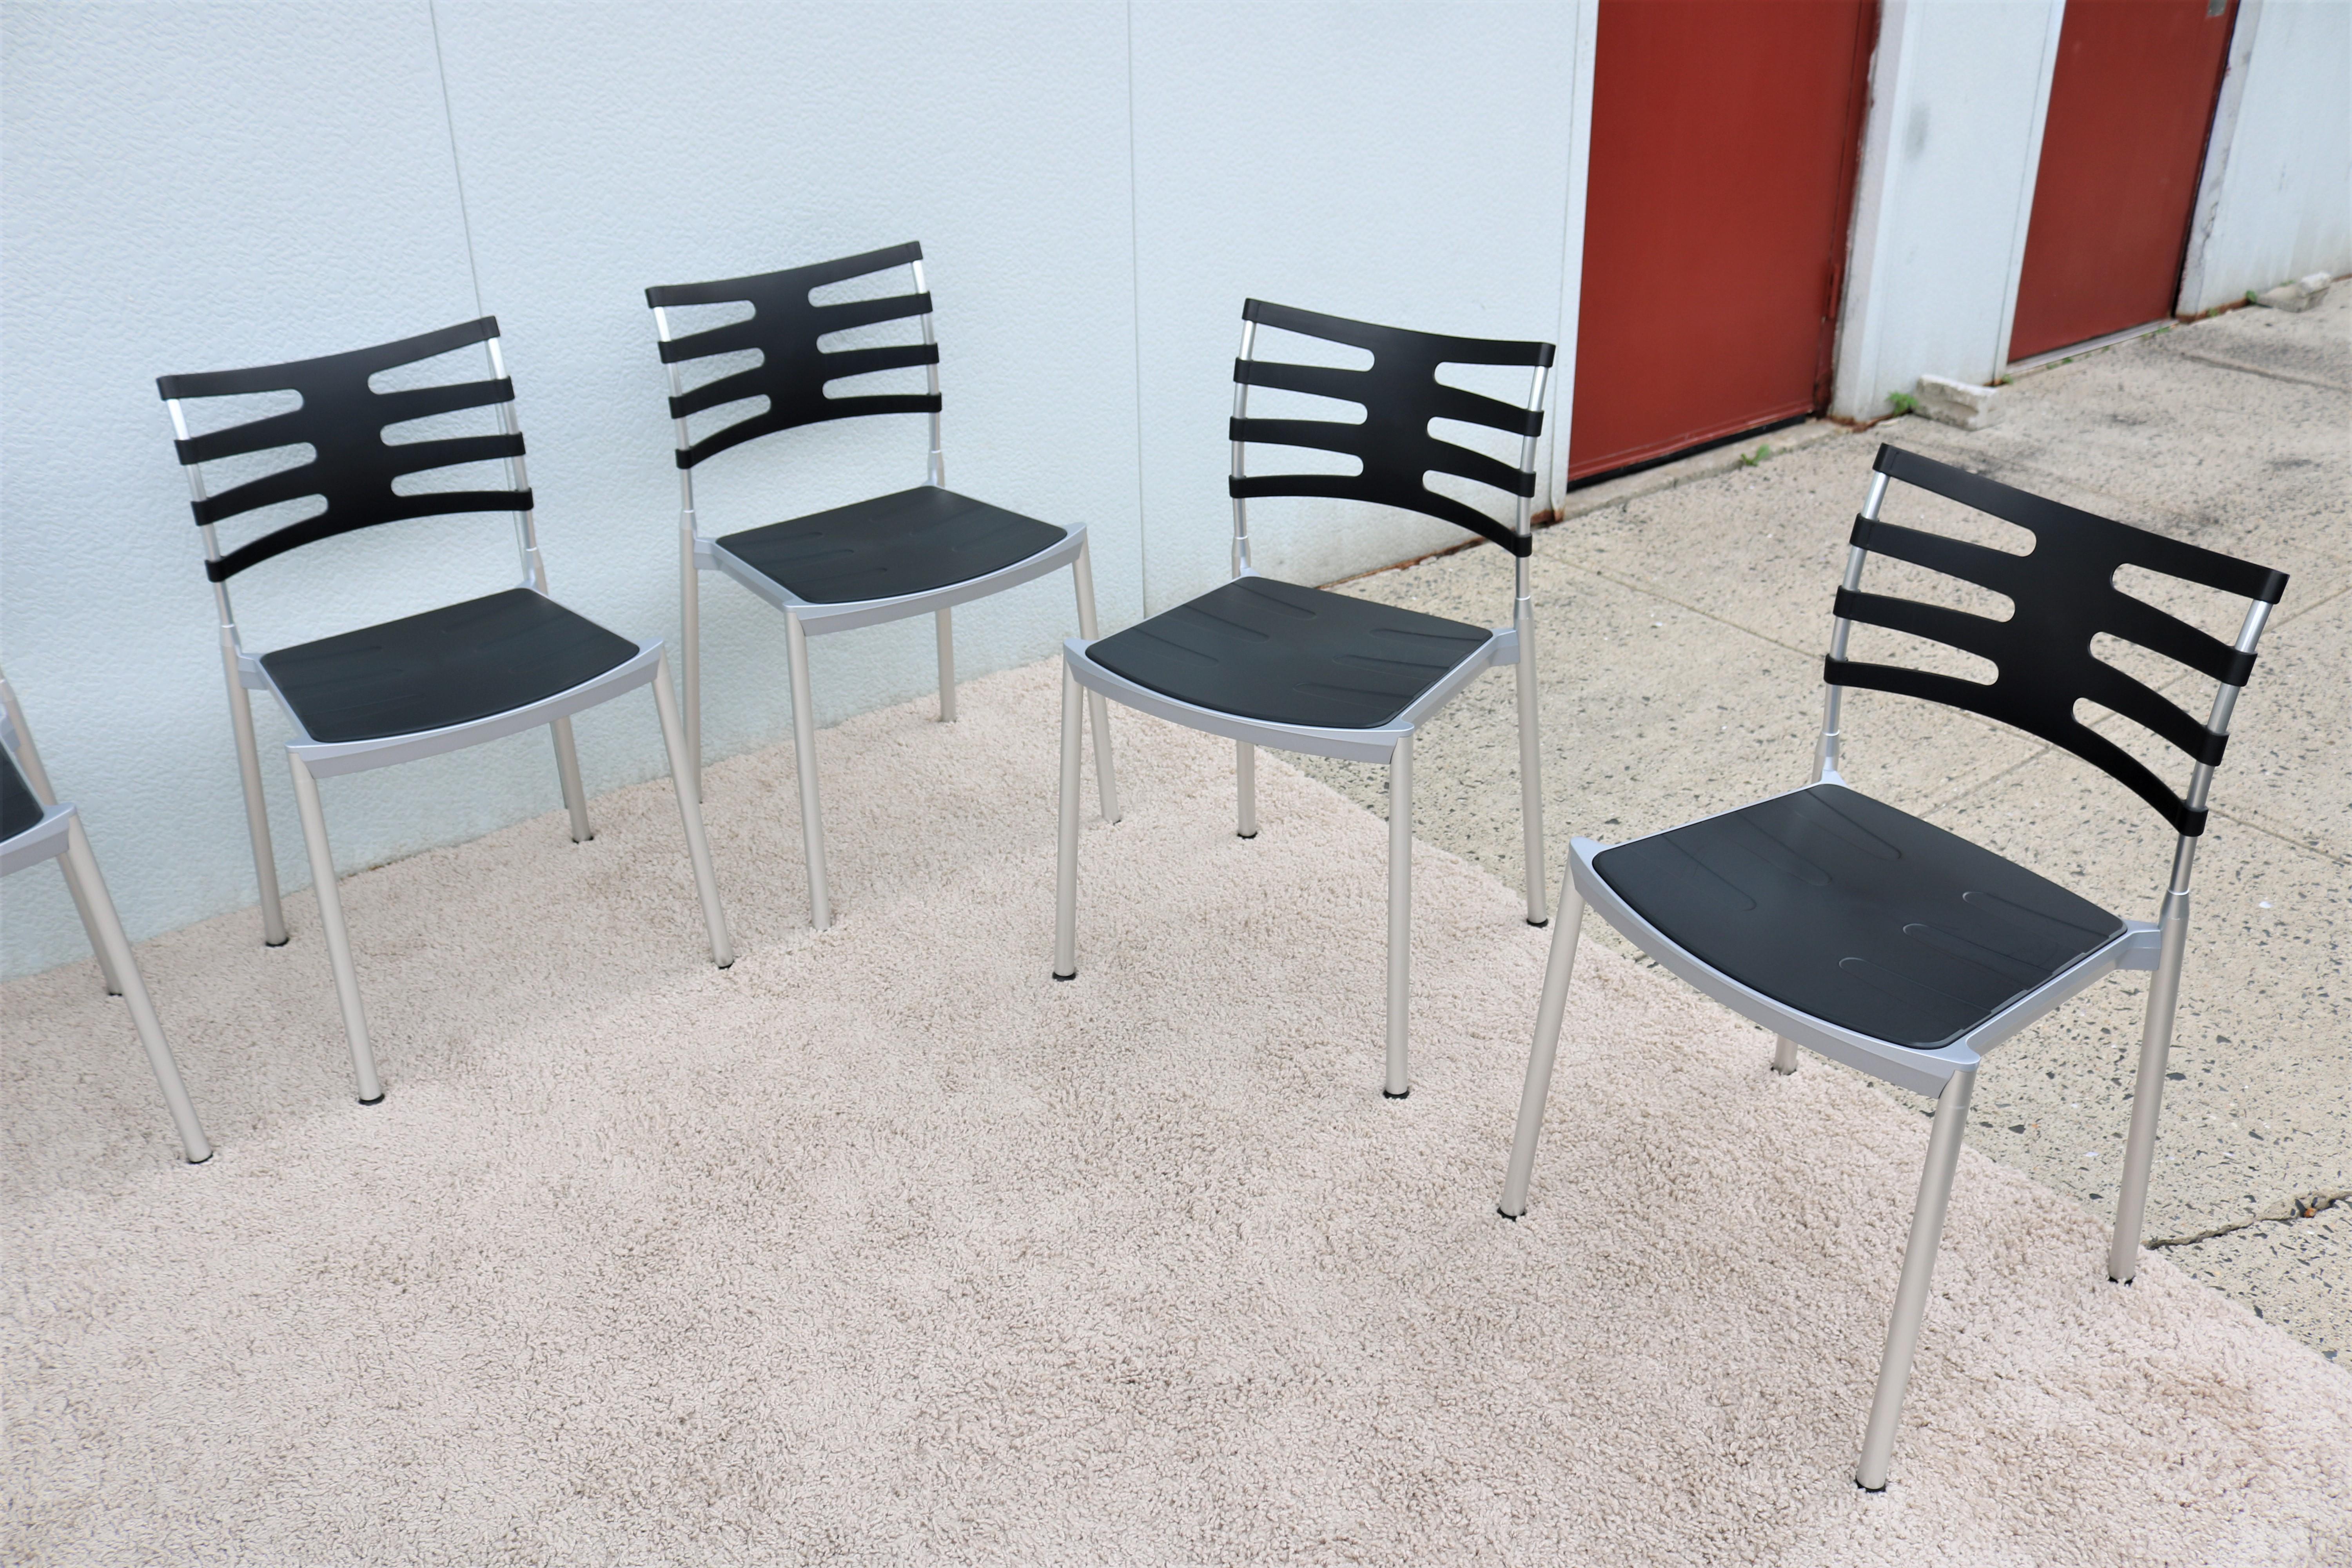 Ces chaises Ice élégantes et minimalistes sont élégantes et fonctionnelles, et conviennent aussi bien à un usage intérieur qu'extérieur.
Sa conception légère et sa fonction d'empilage en font la chaise parfaite pour les repas dans les restaurants